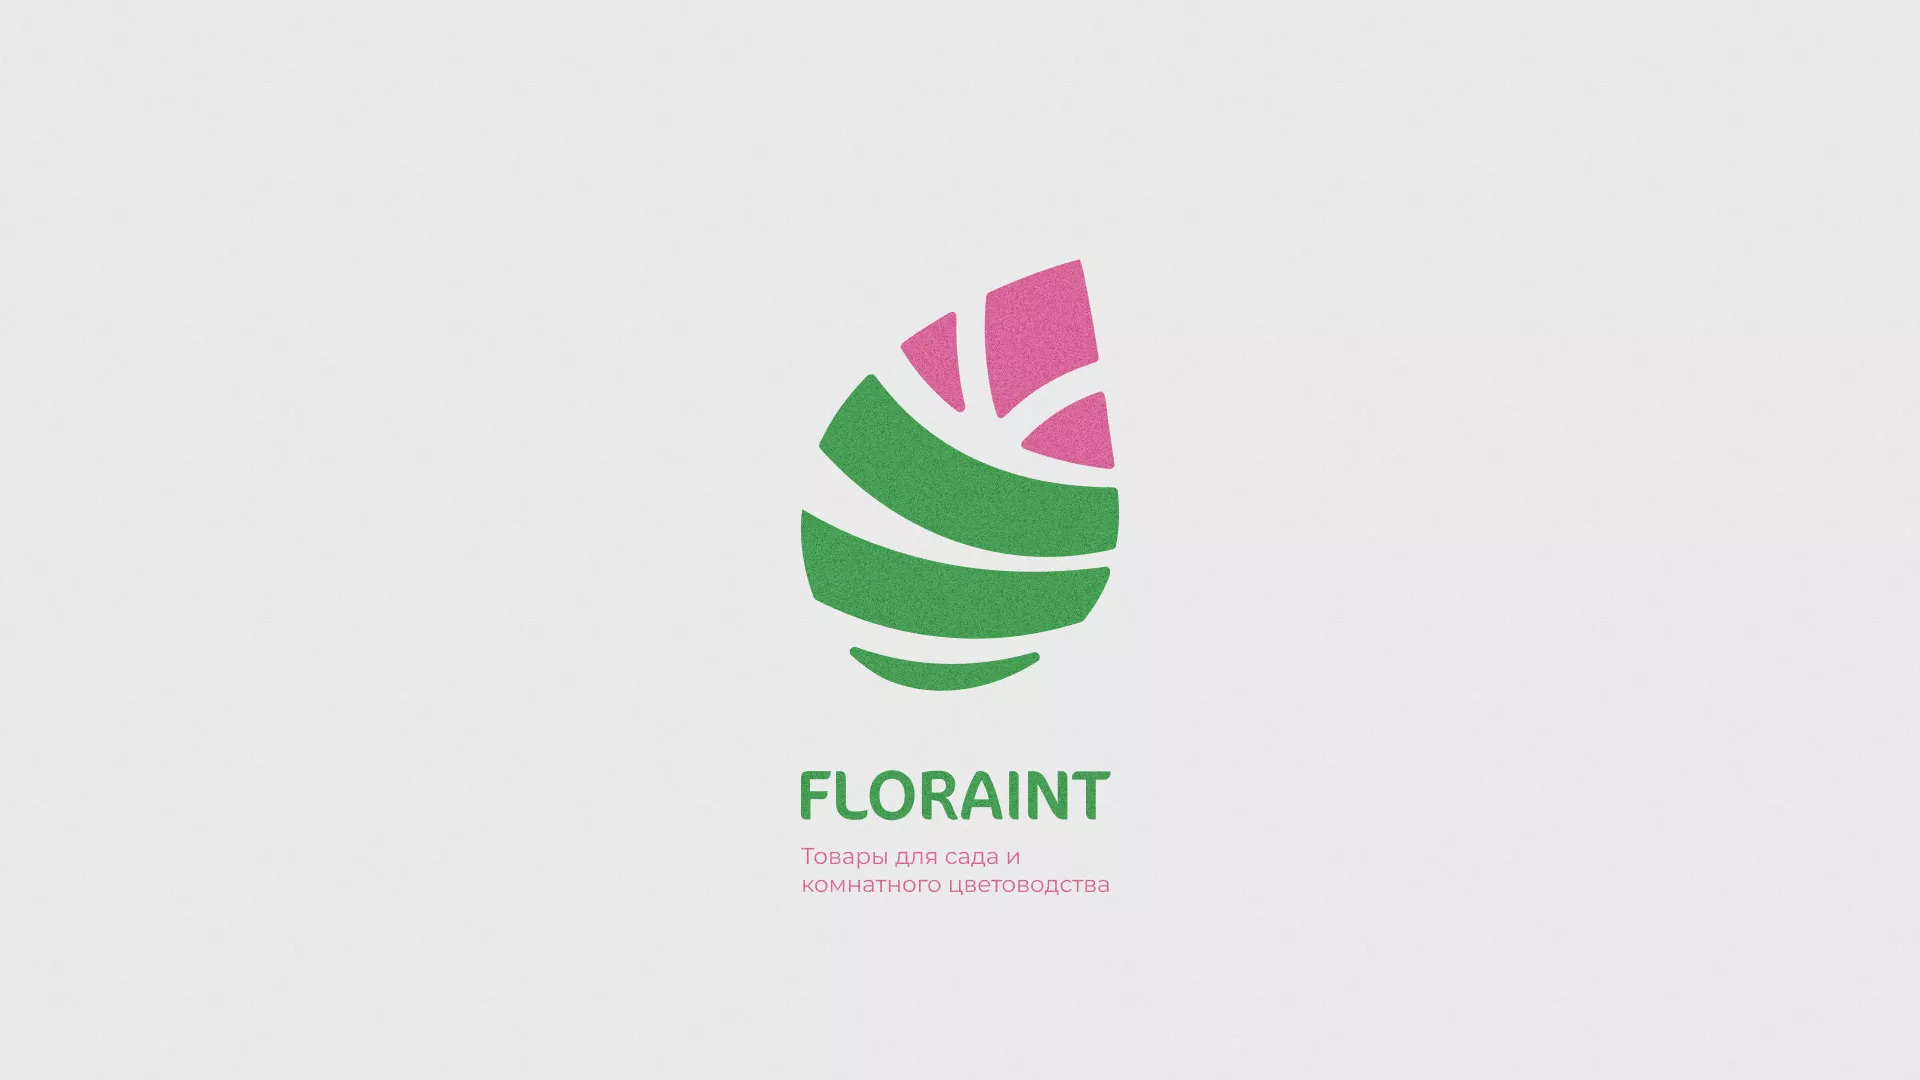 Разработка оформления профиля Instagram для магазина «Floraint» в Кимрах